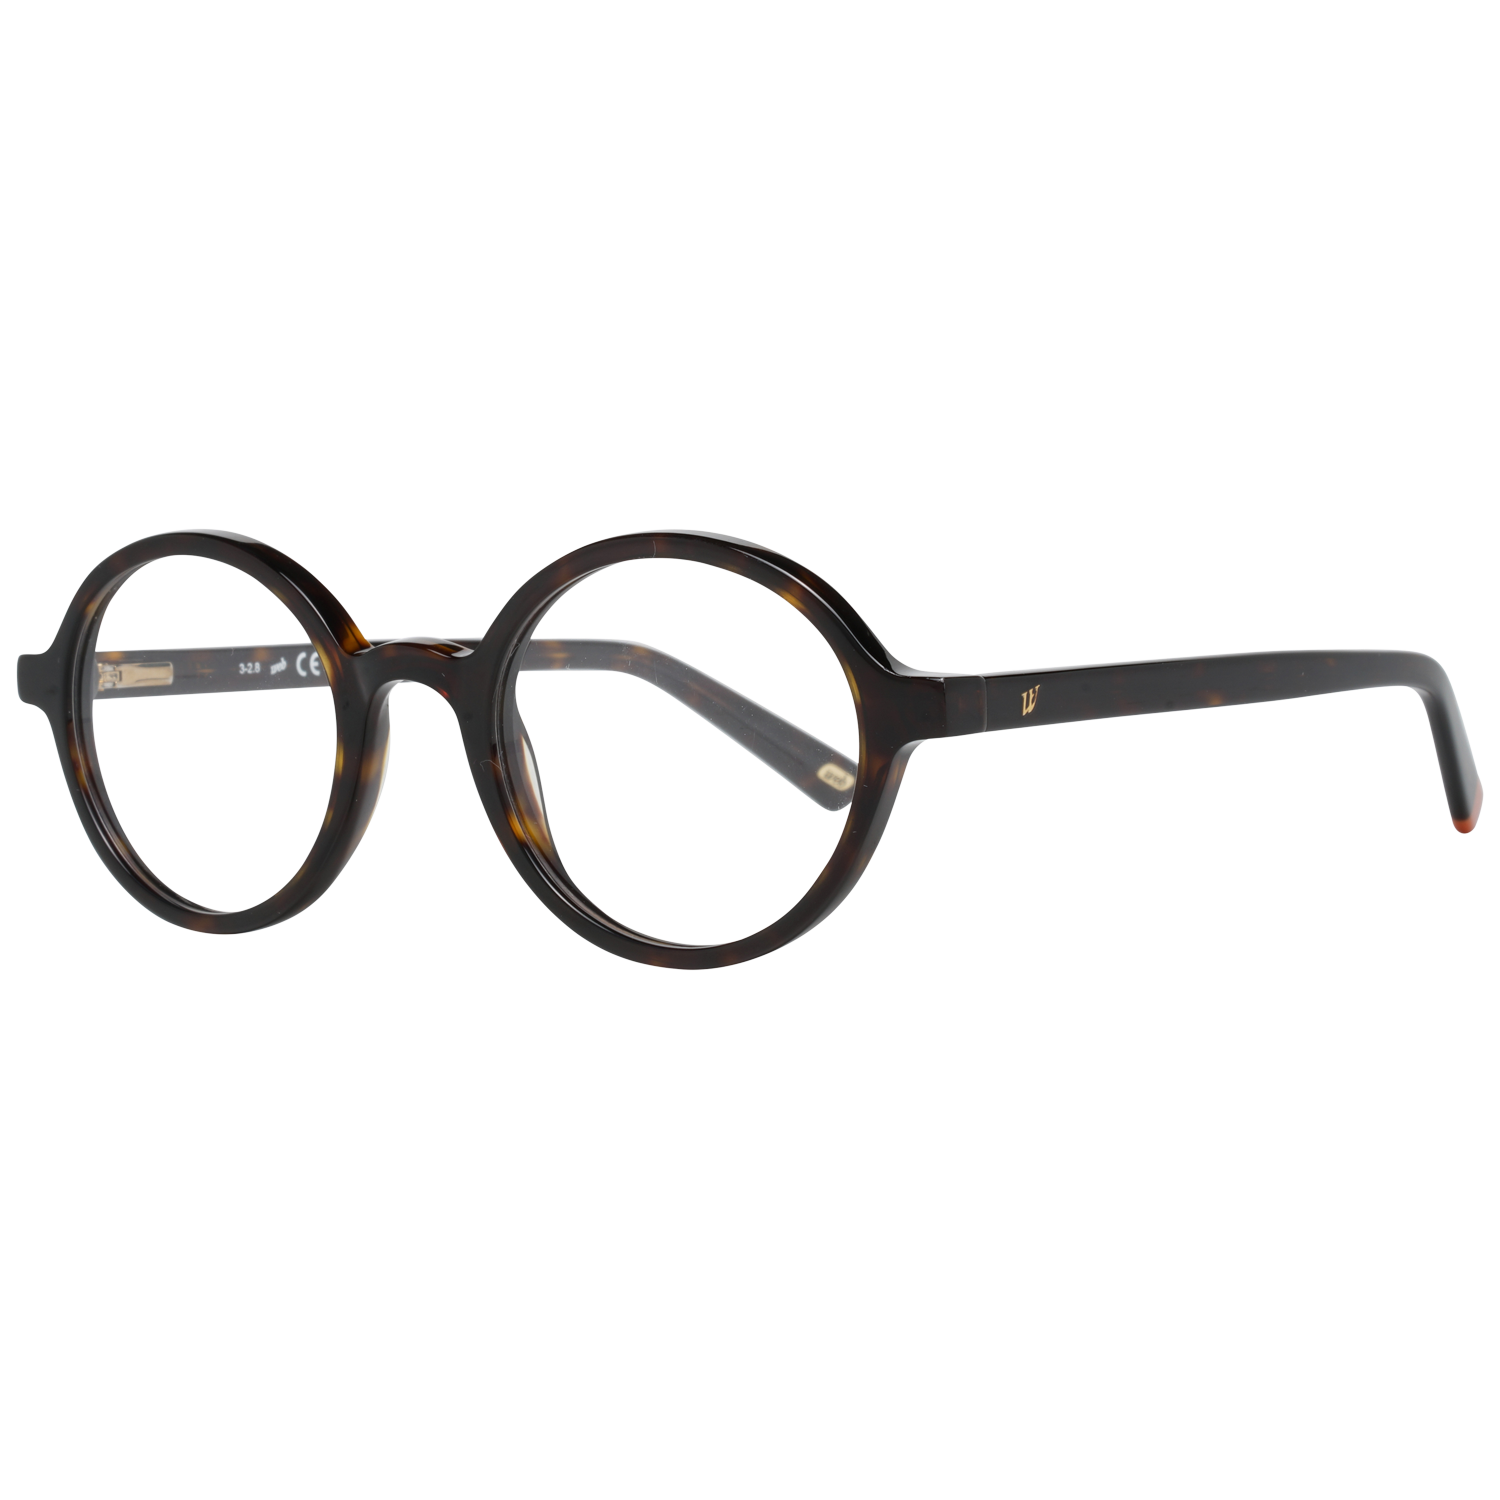 Web Frames Web Optical Frame WE5262 052 47 Eyeglasses Eyewear UK USA Australia 